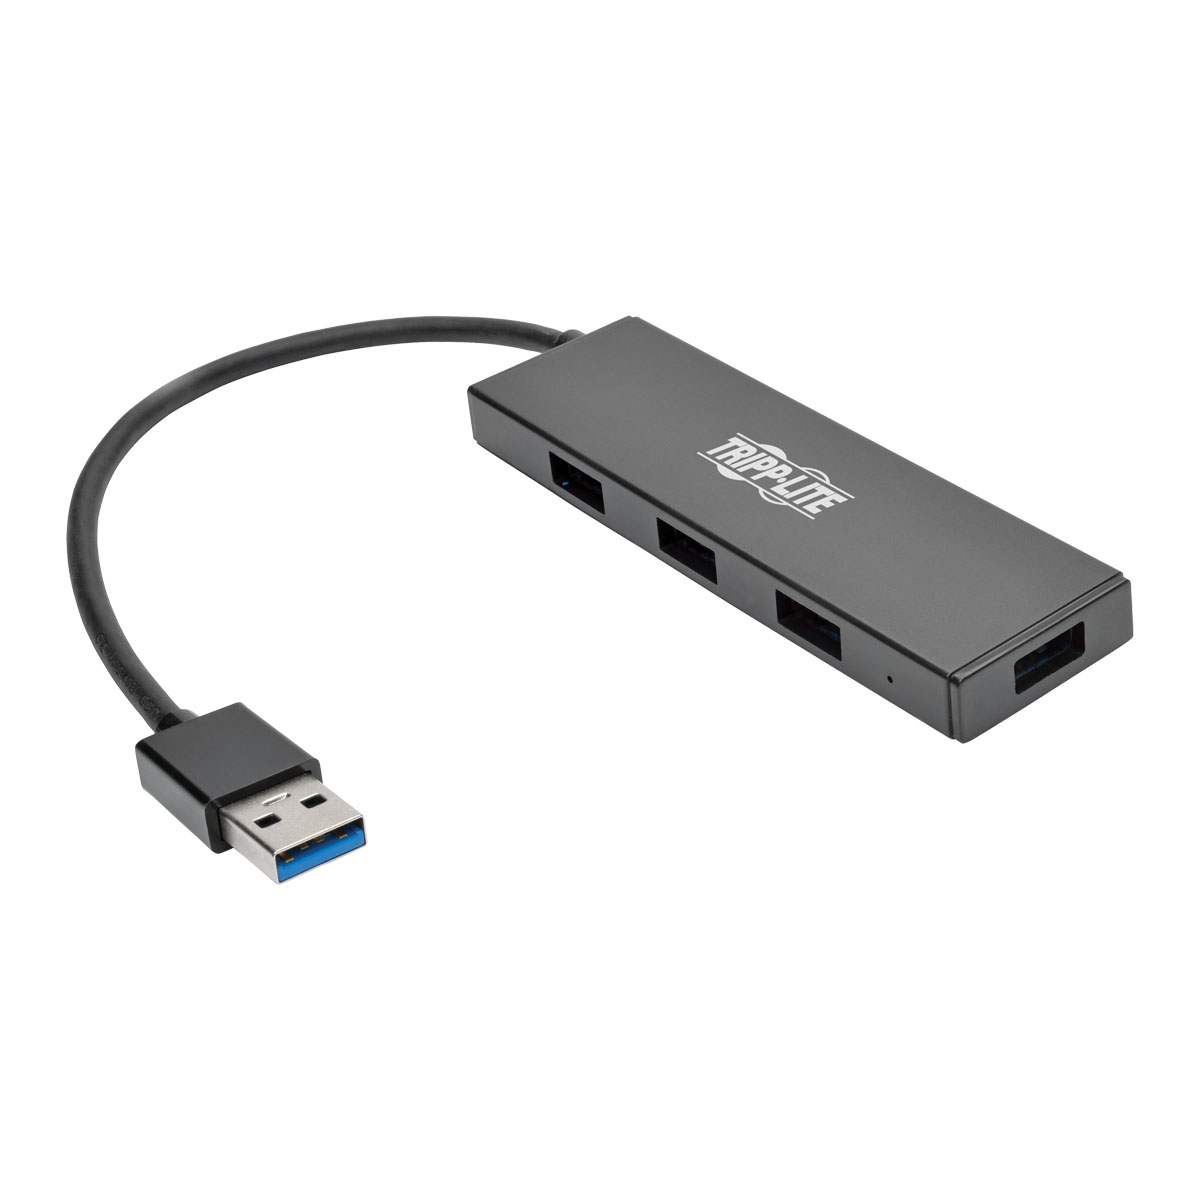 Mini hub USB 2.0 - 4 ports